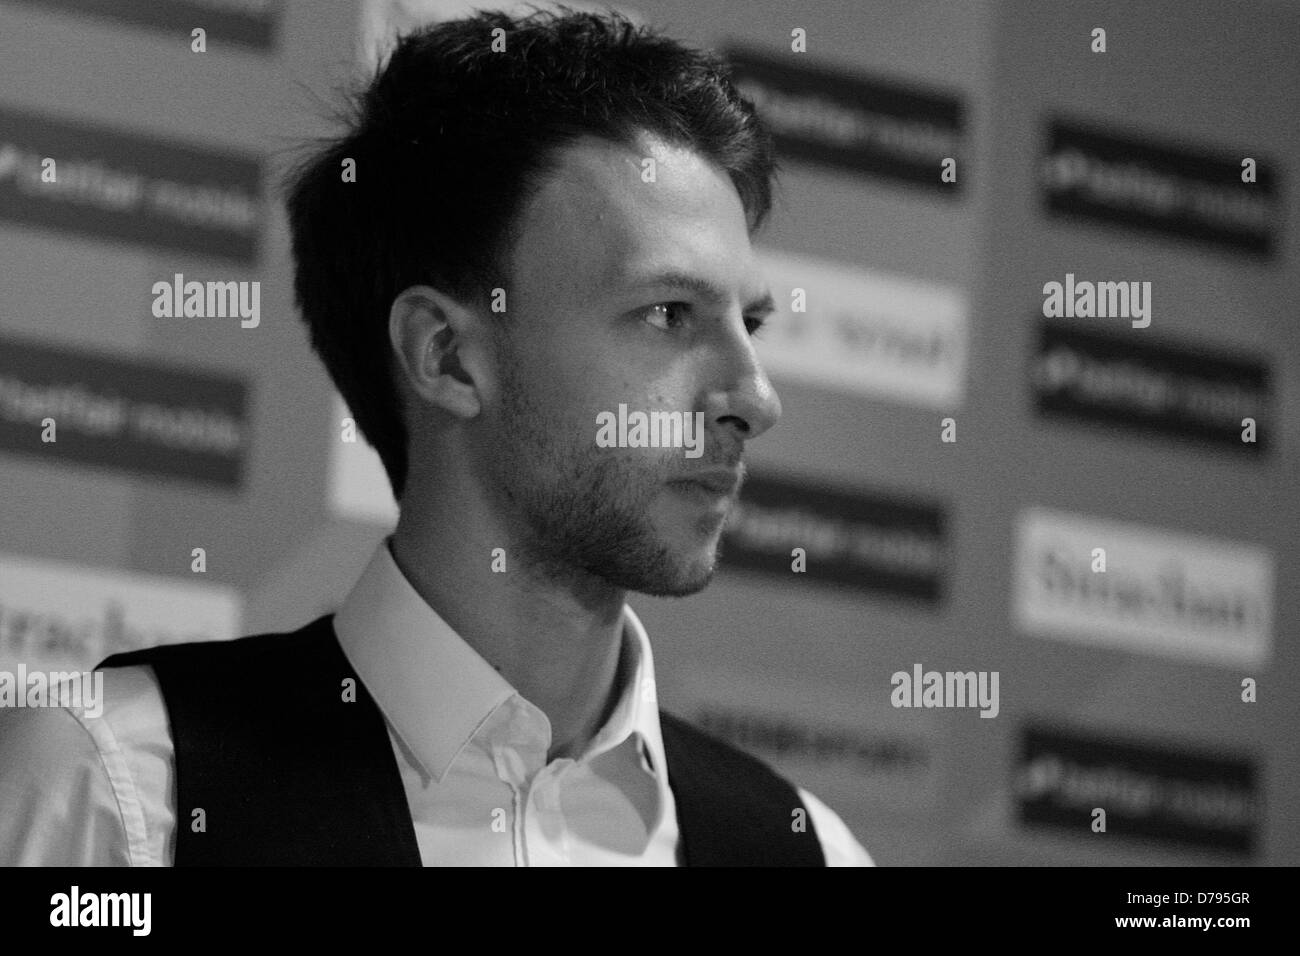 Judd Trump a sua conferenza stampa al World Snooker 2013 Foto Stock